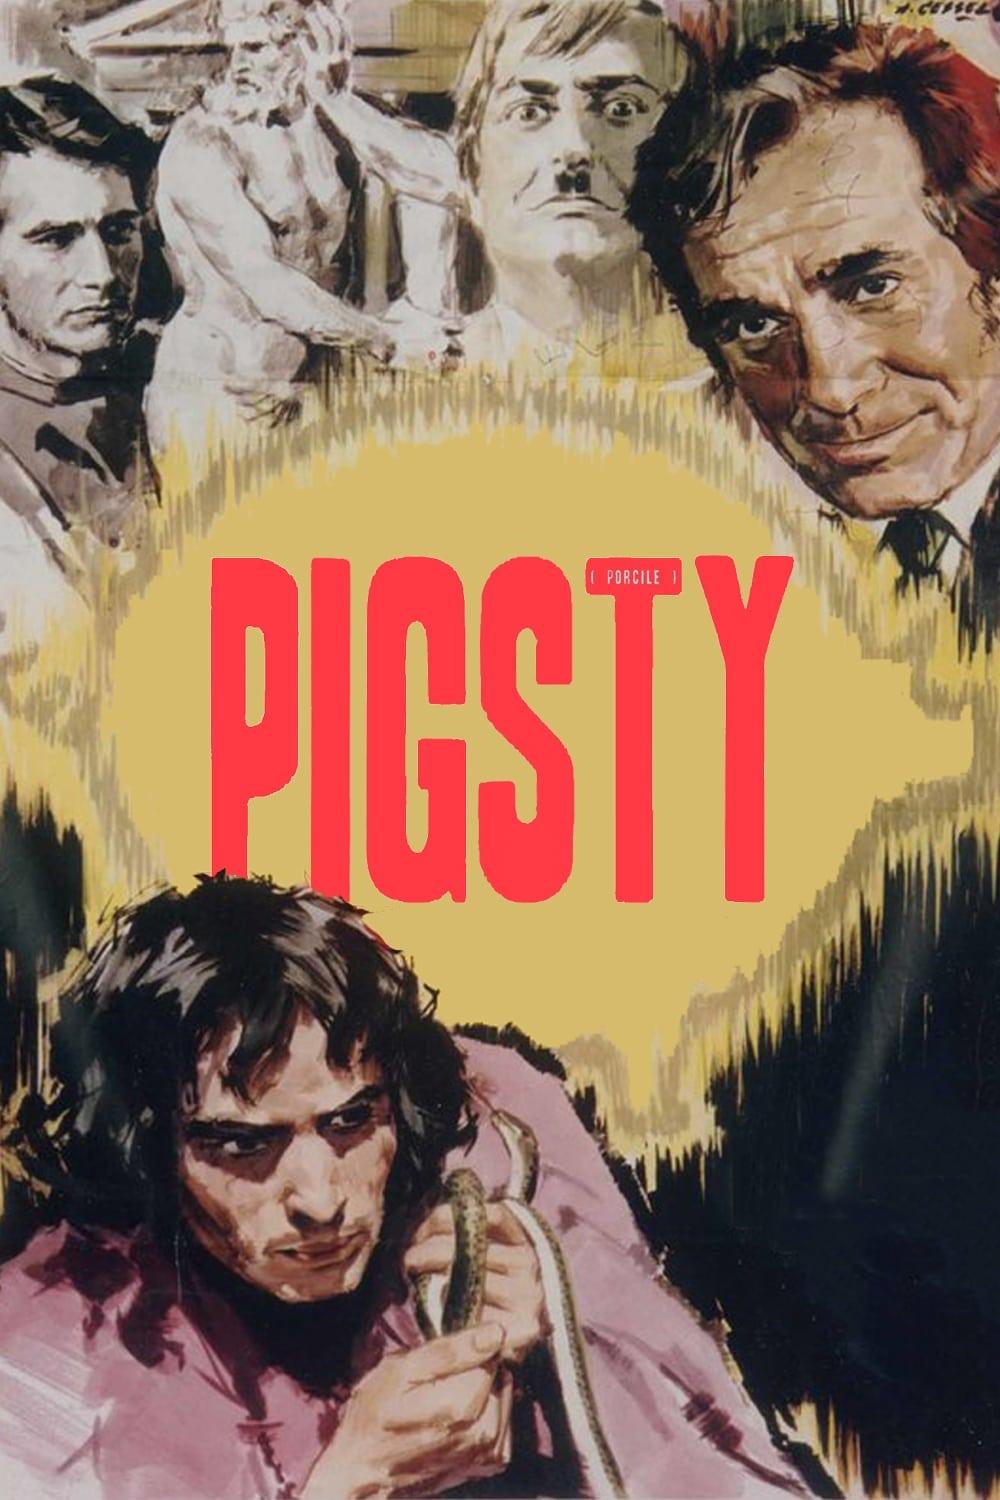 Pigsty poster